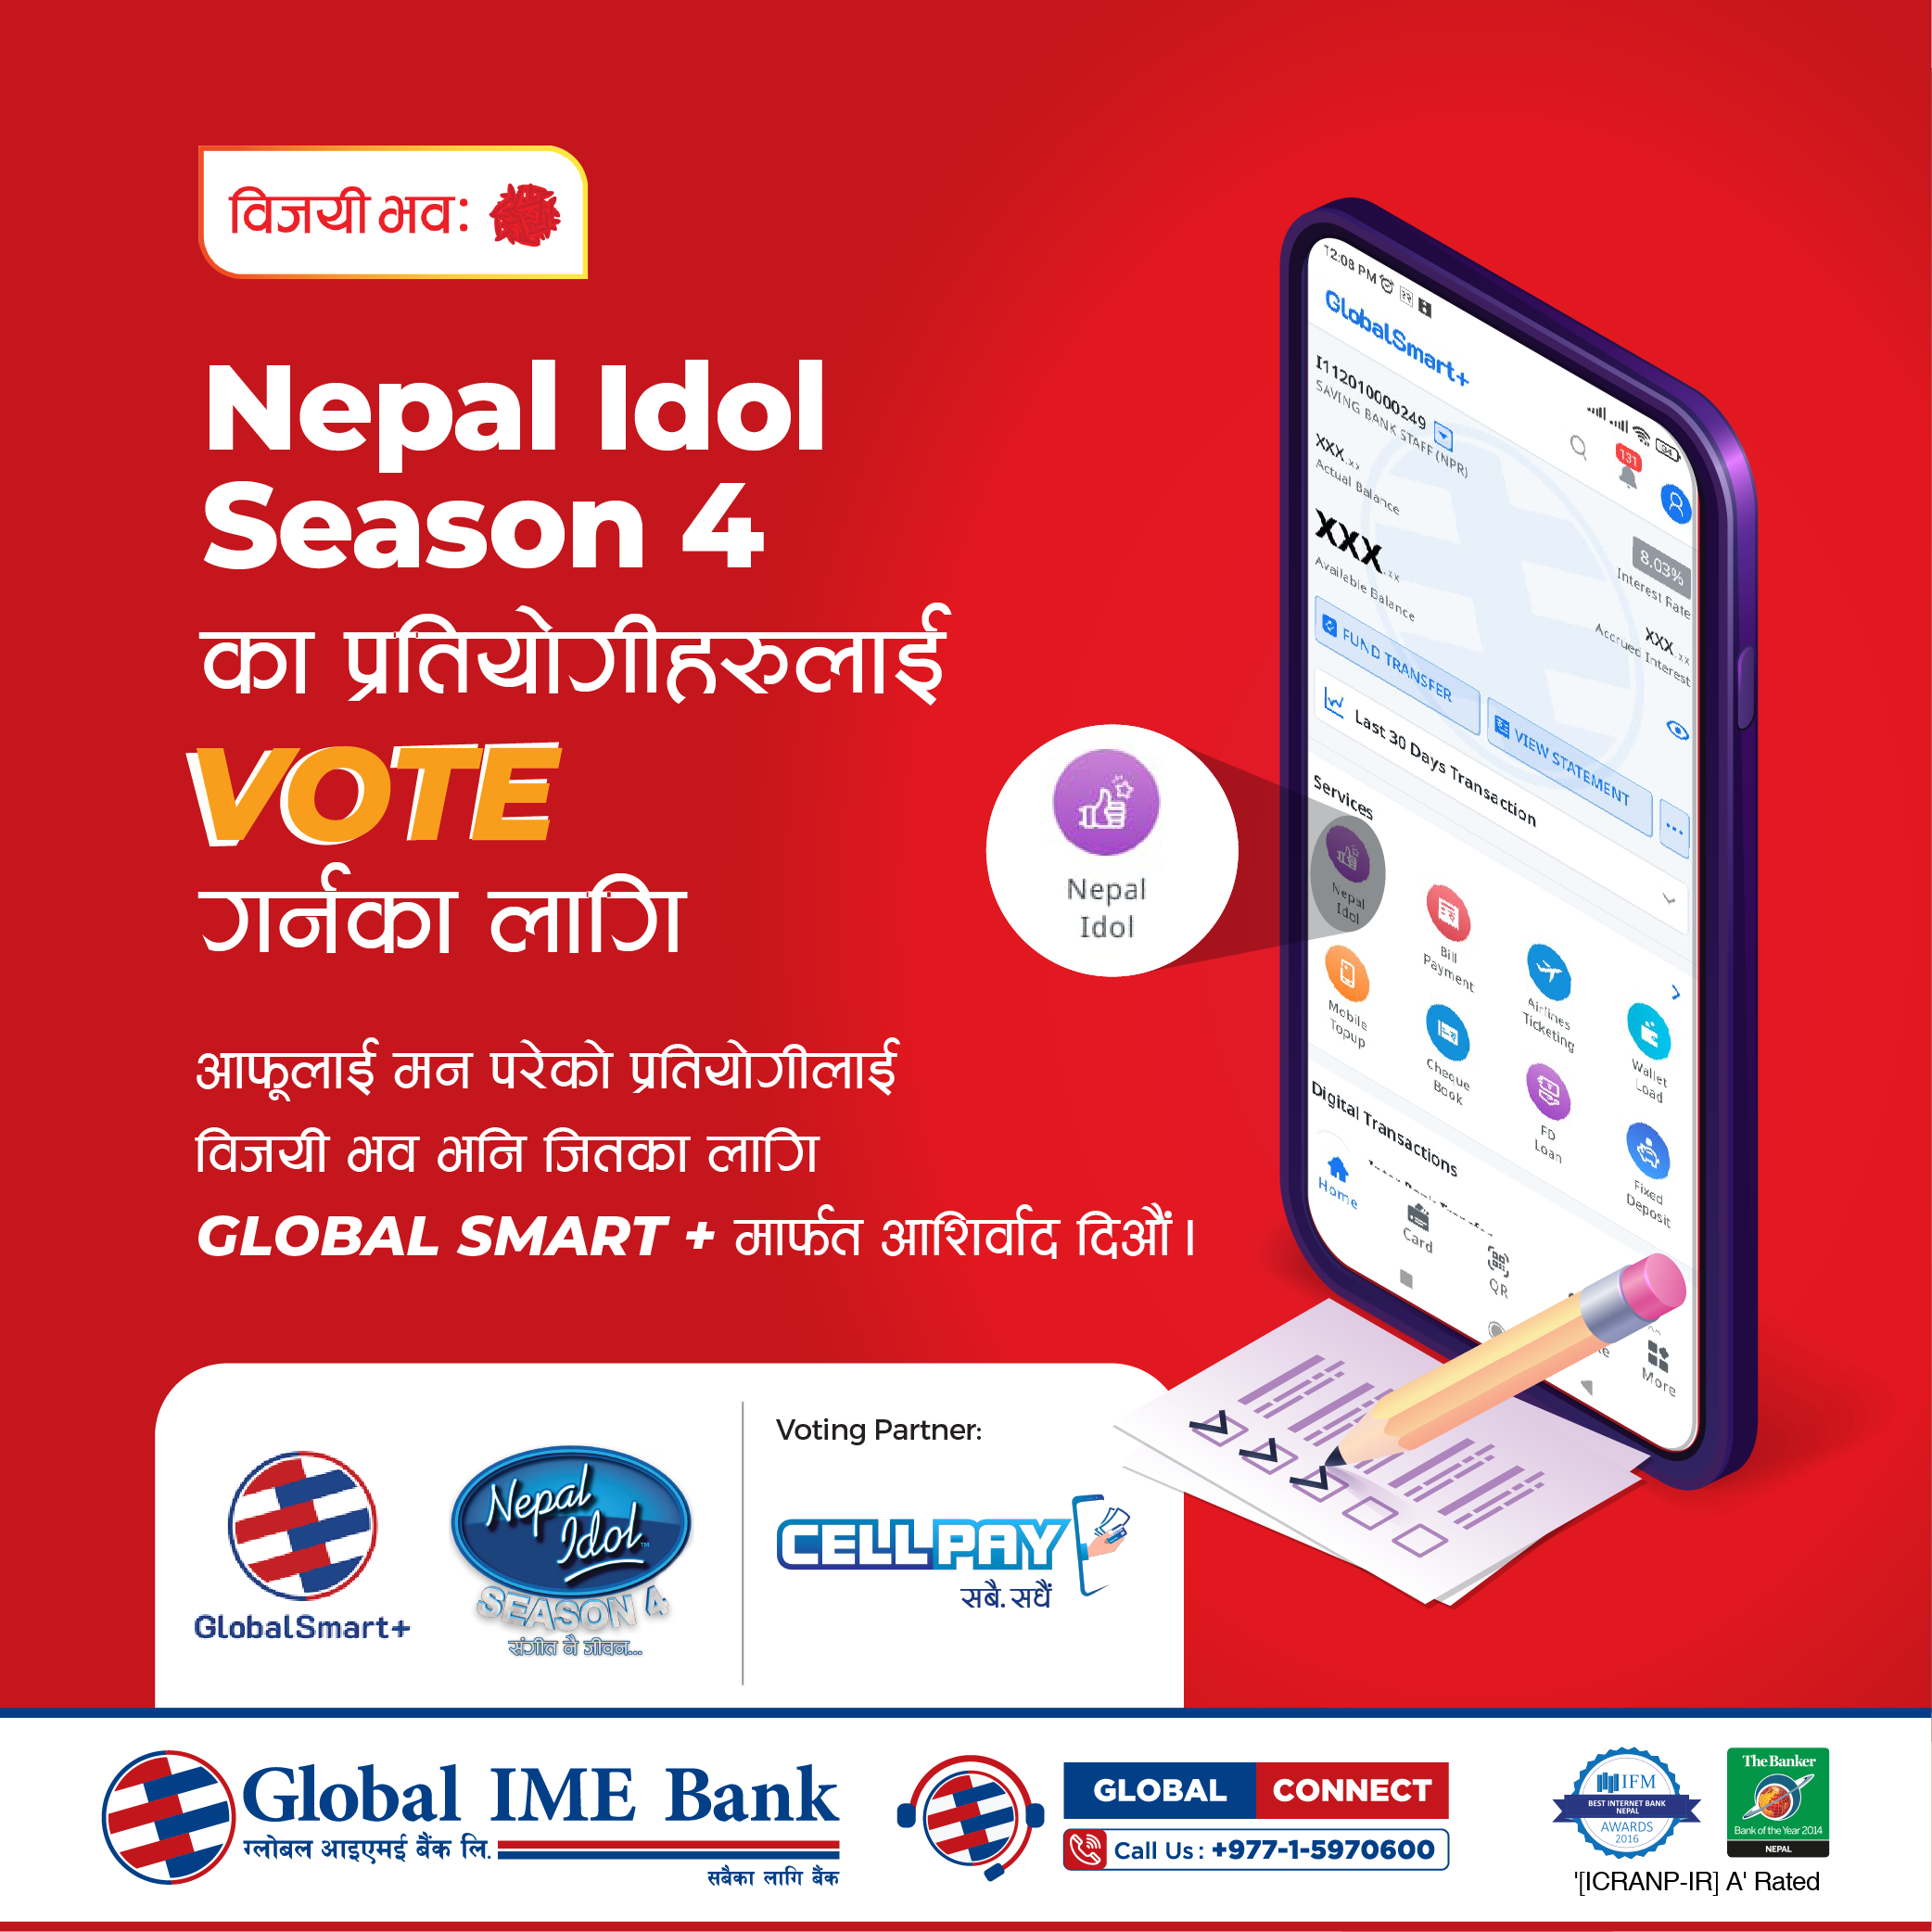 ग्लोबल आईएमई बैंकको मोबाइल एपमार्फत नेपाल आइडलमा भोट गर्न सकिने